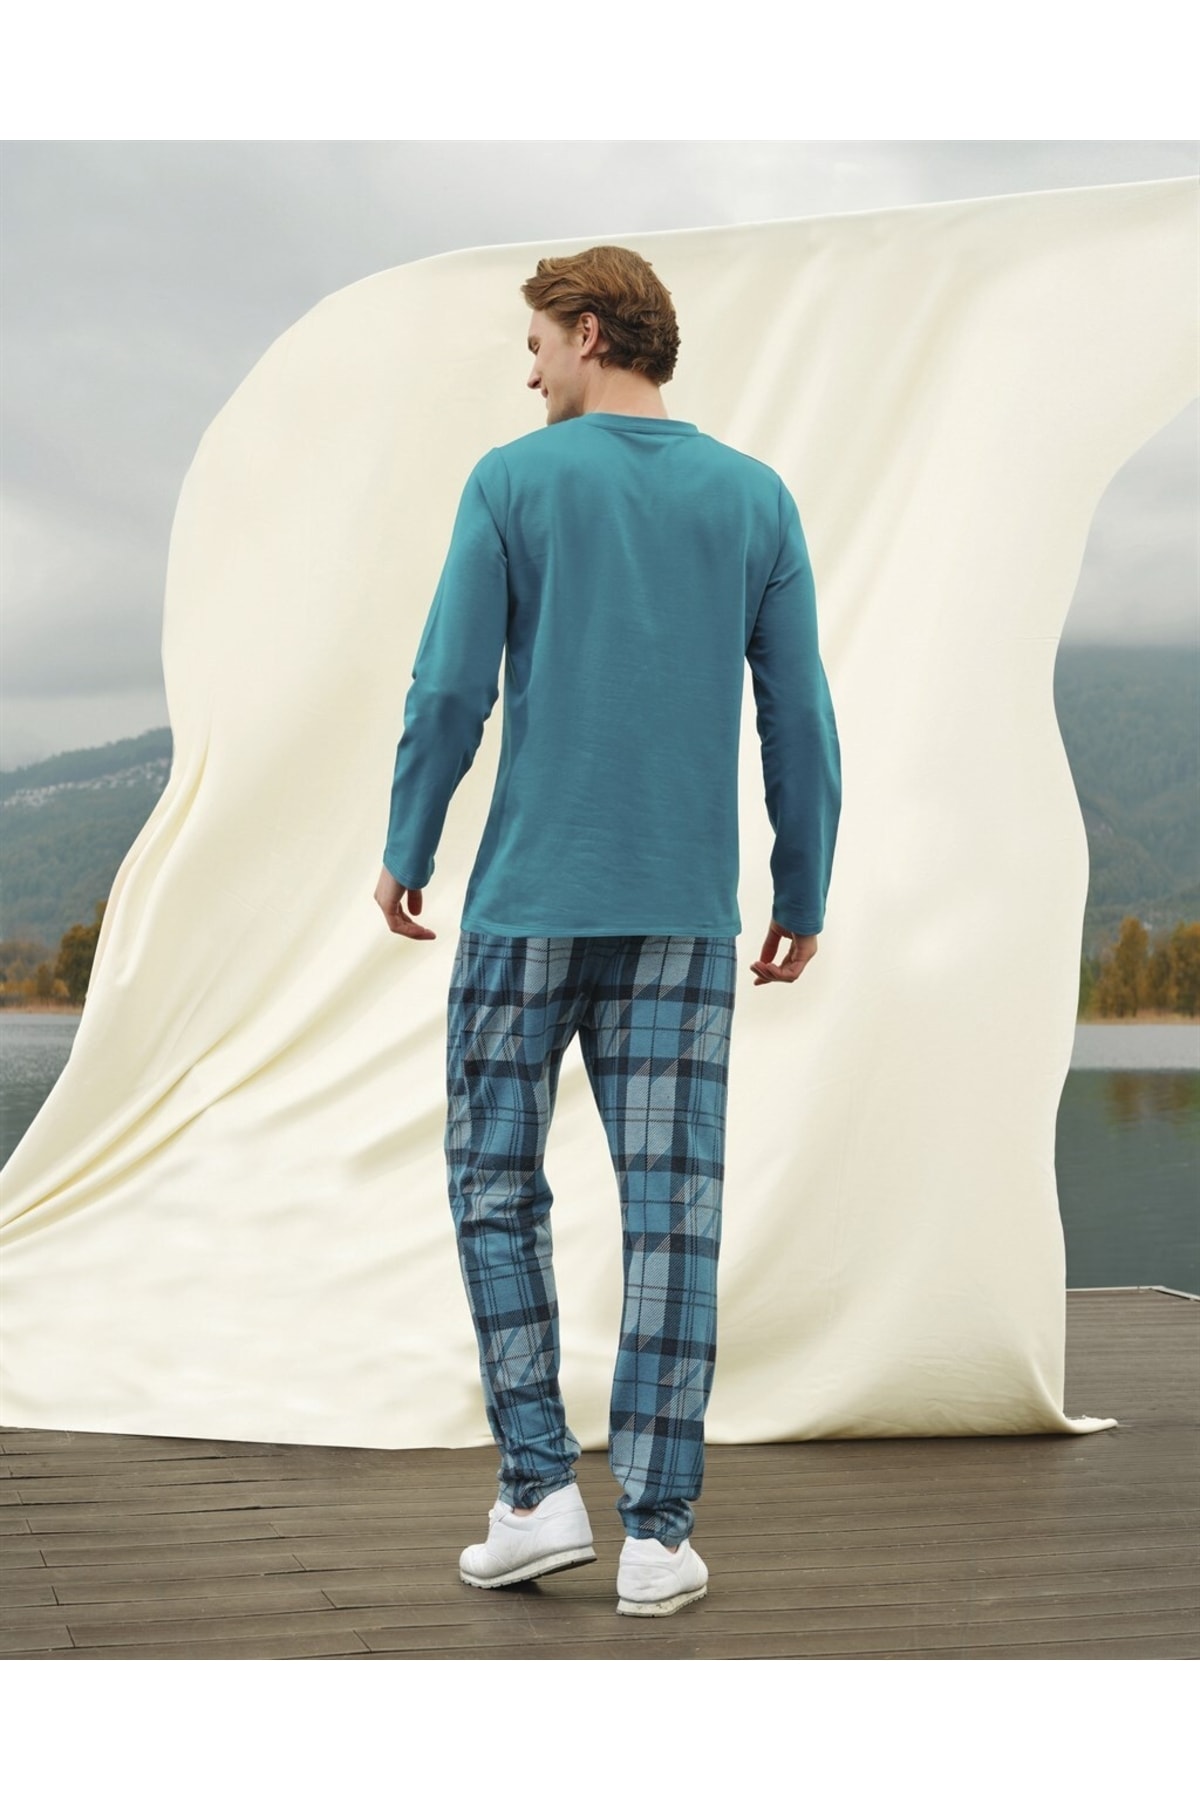 Doreanse Erkek Turkuaz Kareli Marka Baskılı Uzun Kol T-shirt Pijama Takımı 4683 OH11010